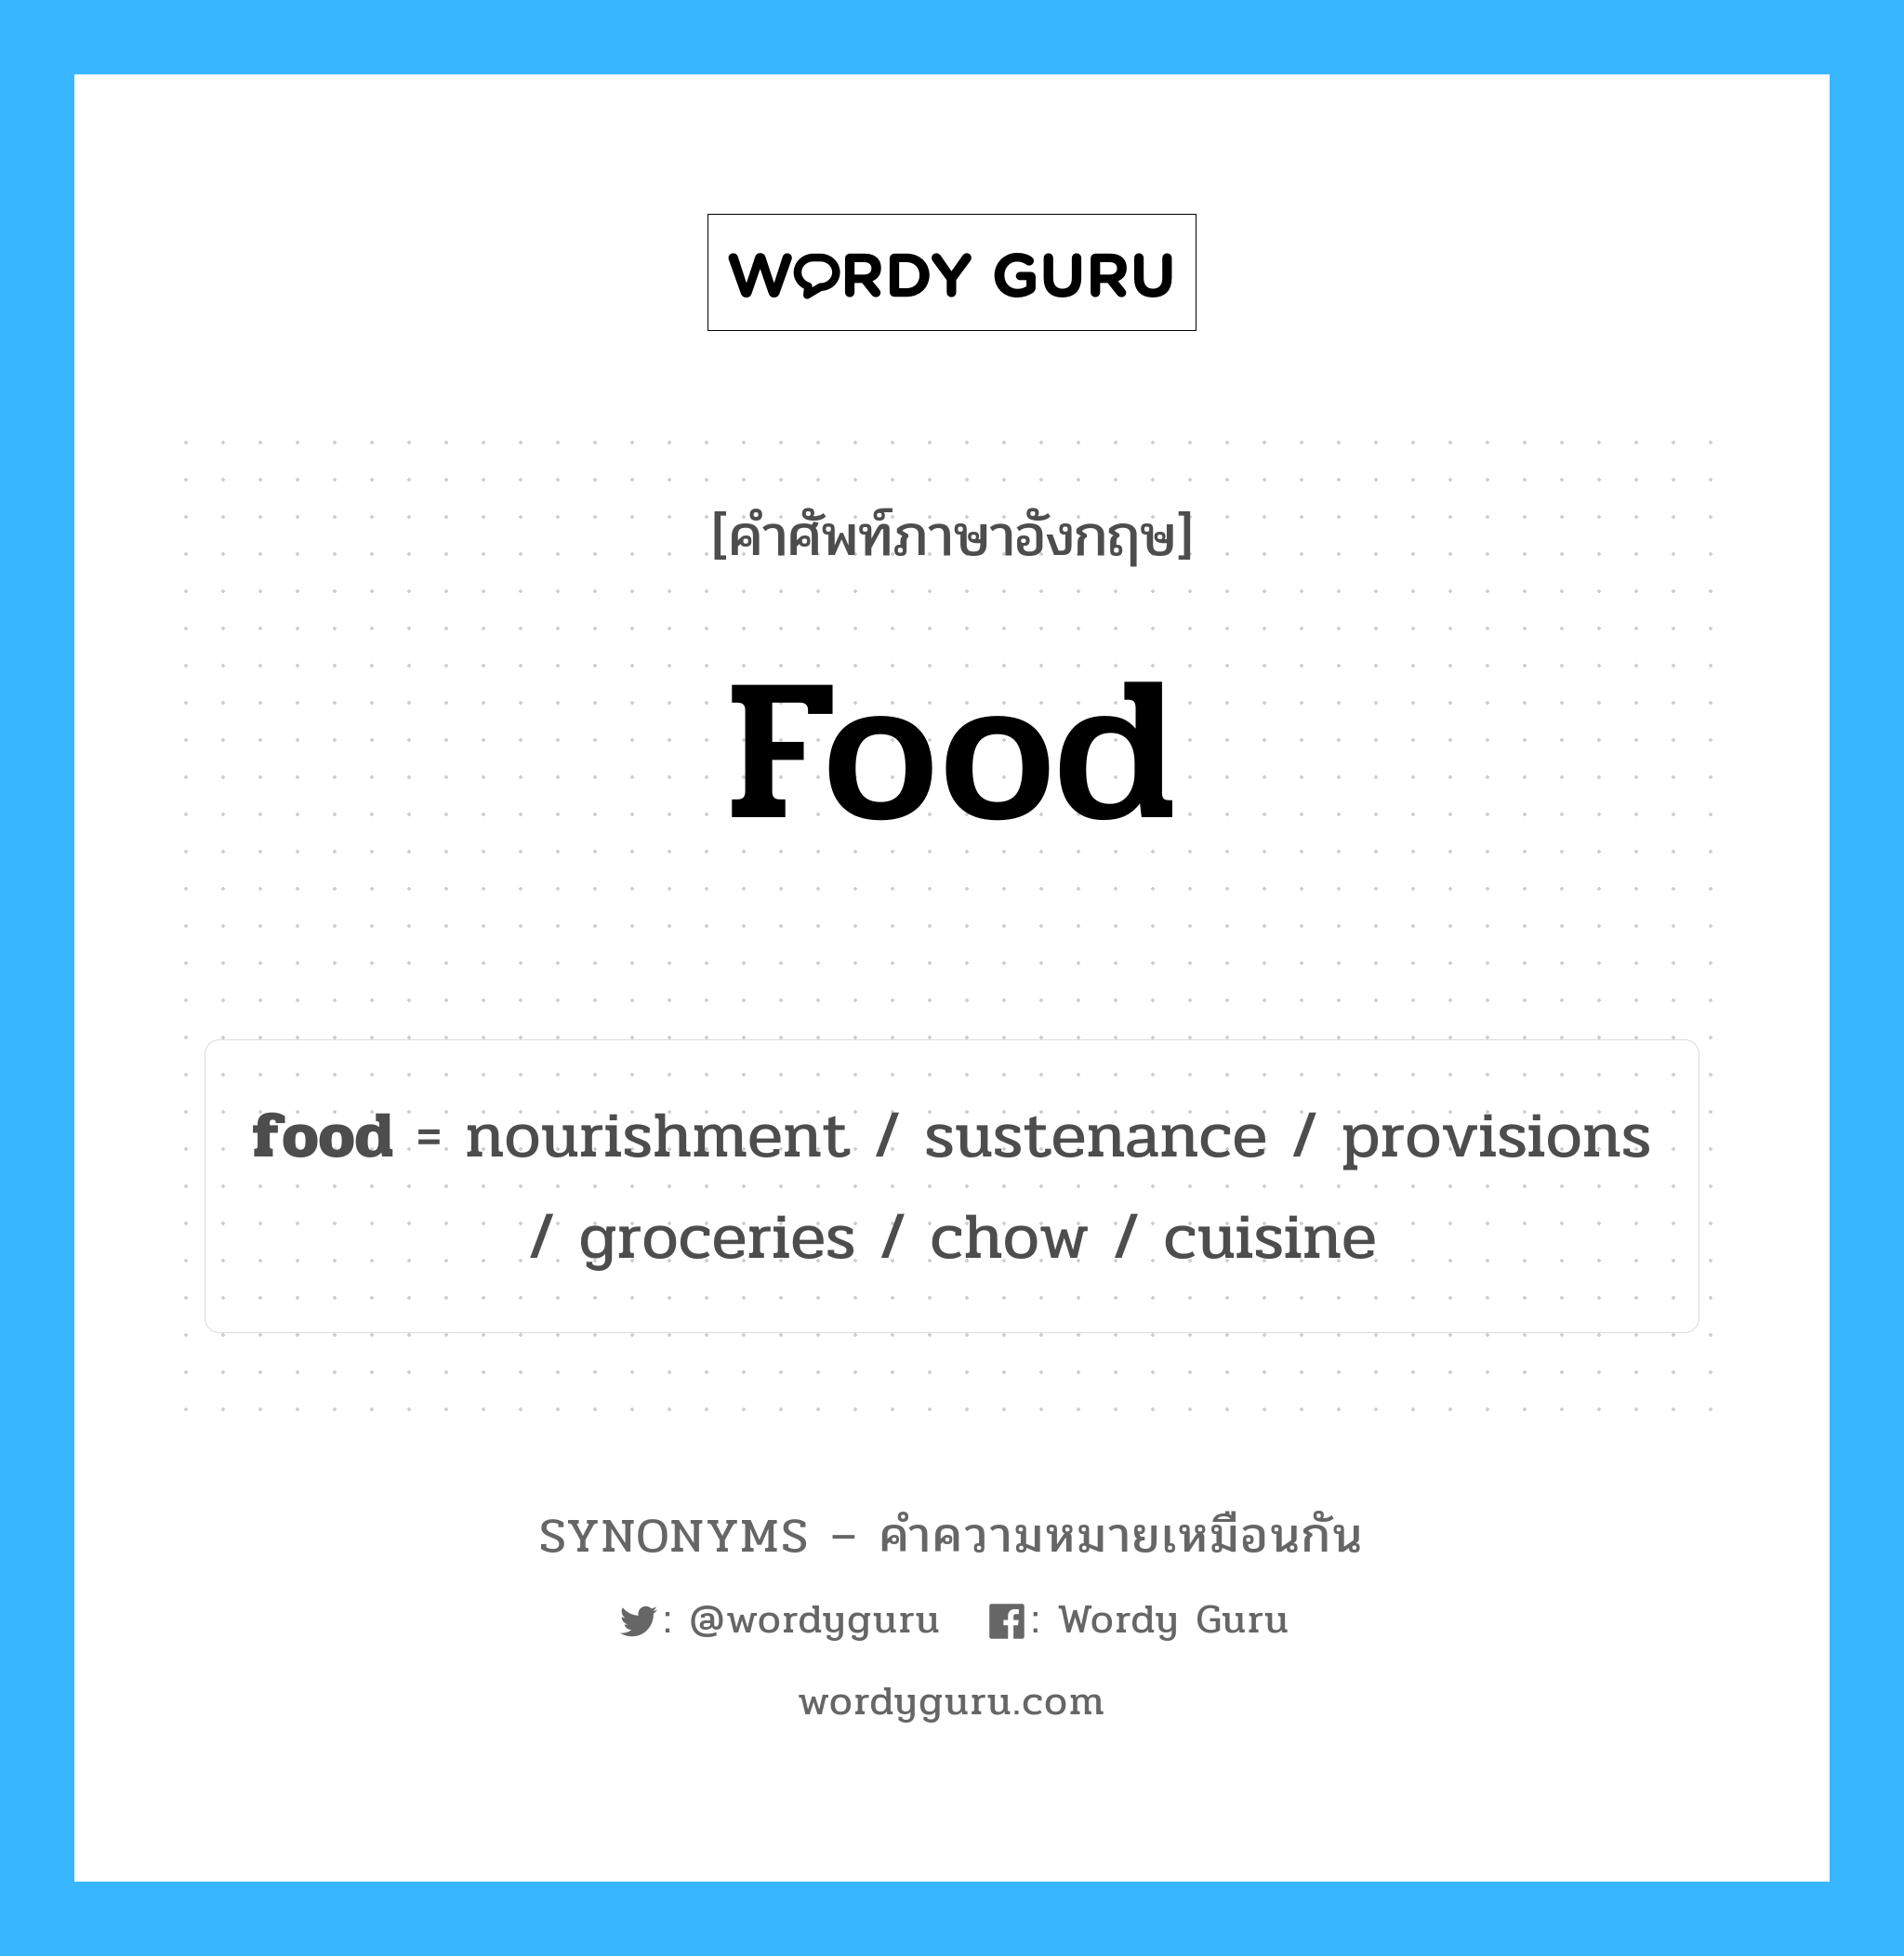 food เป็นหนึ่งใน cuisine และมีคำอื่น ๆ อีกดังนี้, คำศัพท์ภาษาอังกฤษ food ความหมายคล้ายกันกับ cuisine แปลว่า อาหาร หมวด cuisine